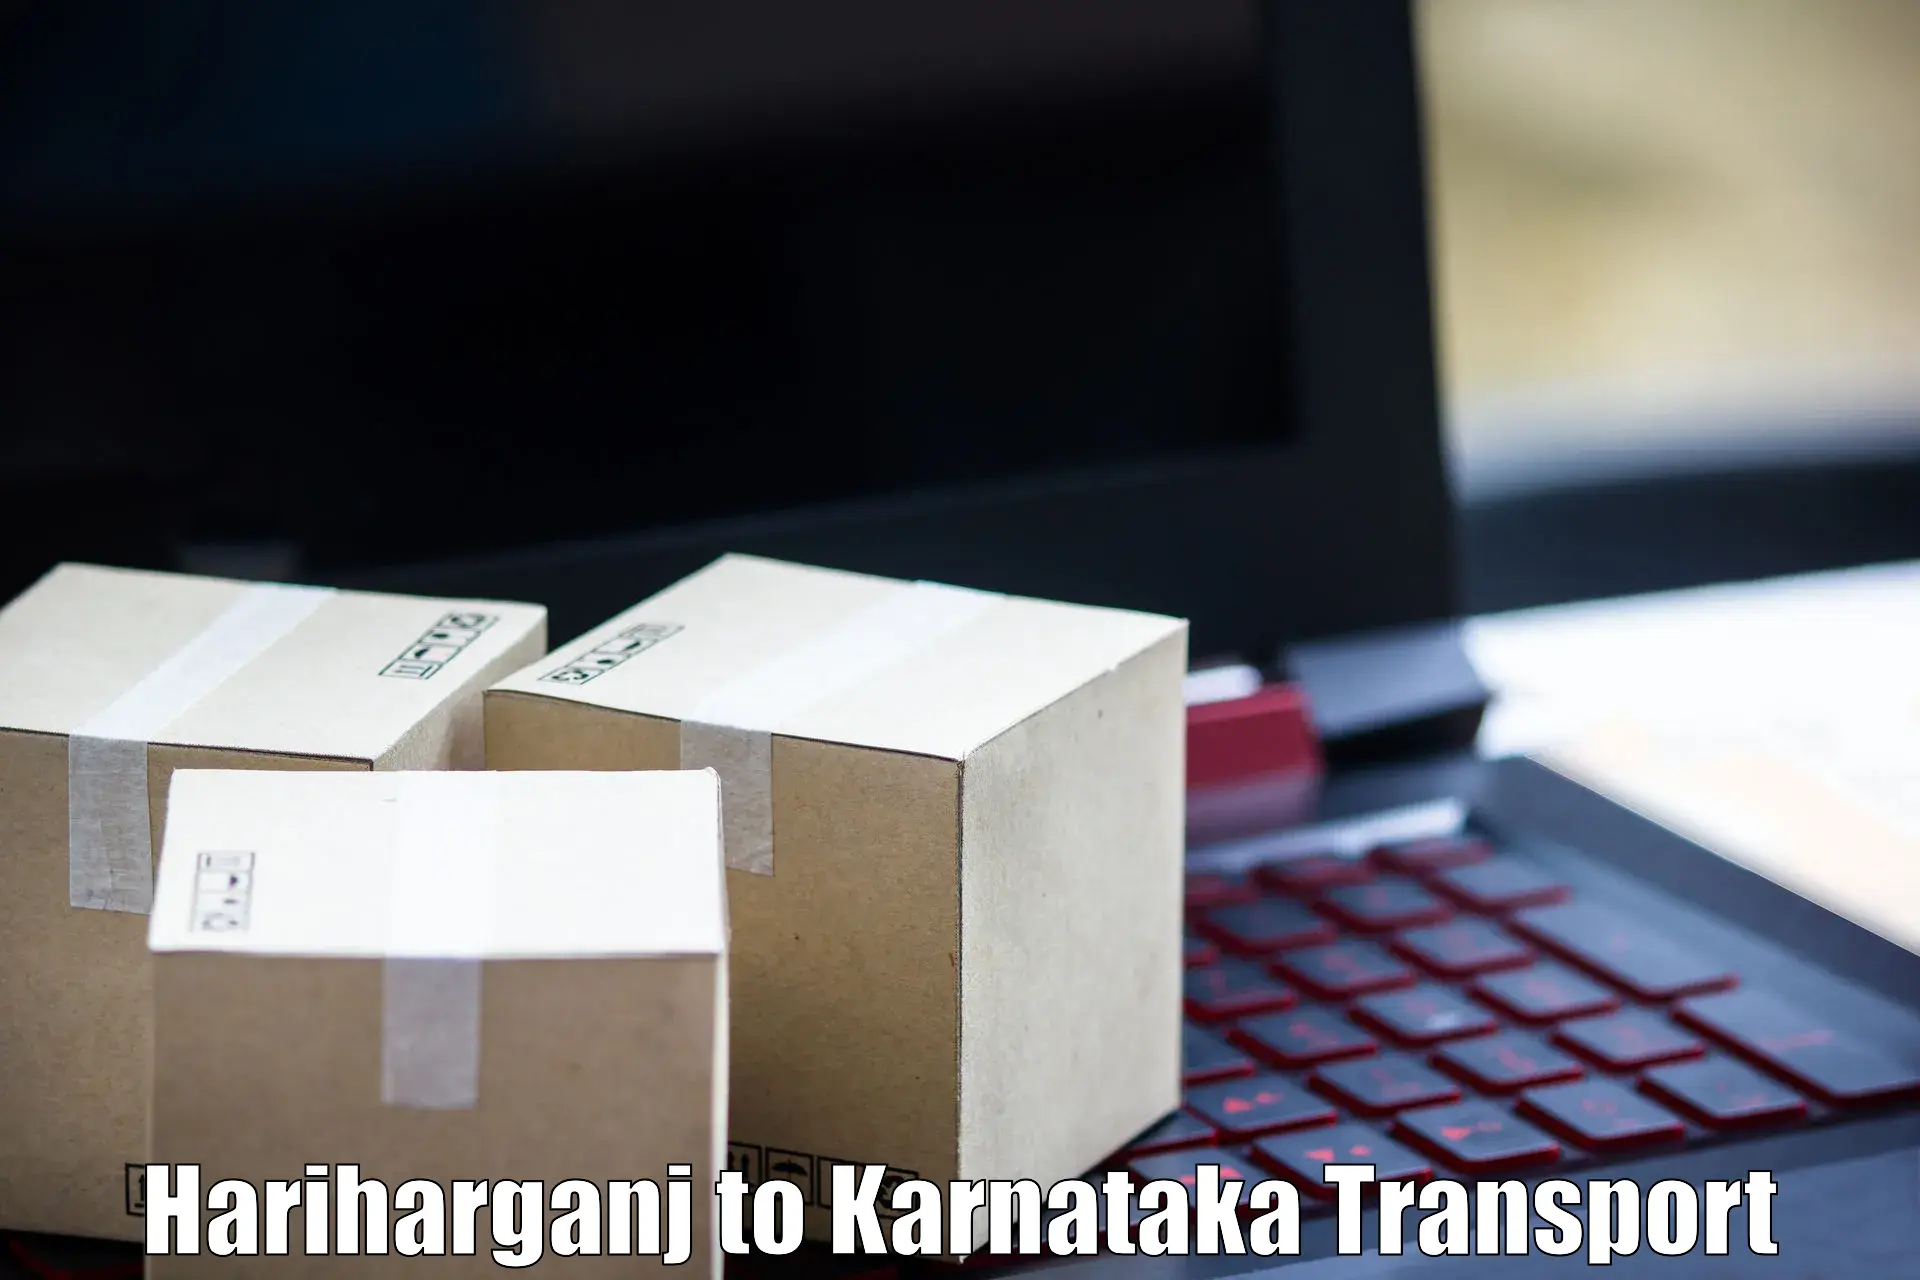 Daily parcel service transport Hariharganj to Bagaluru